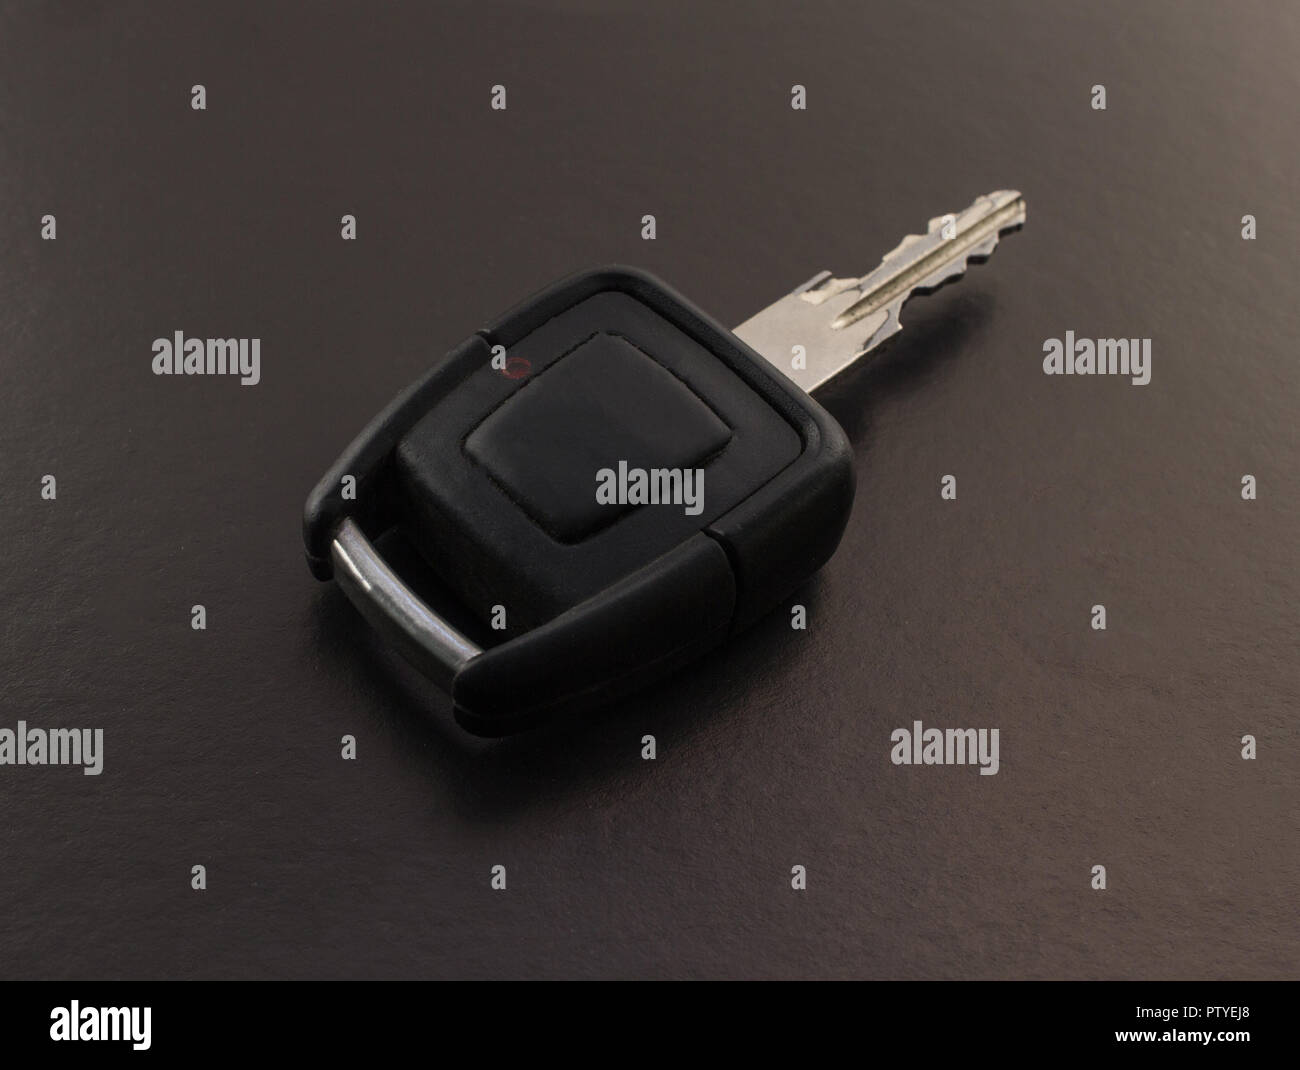 Car key on black background, close-up Stock Photo